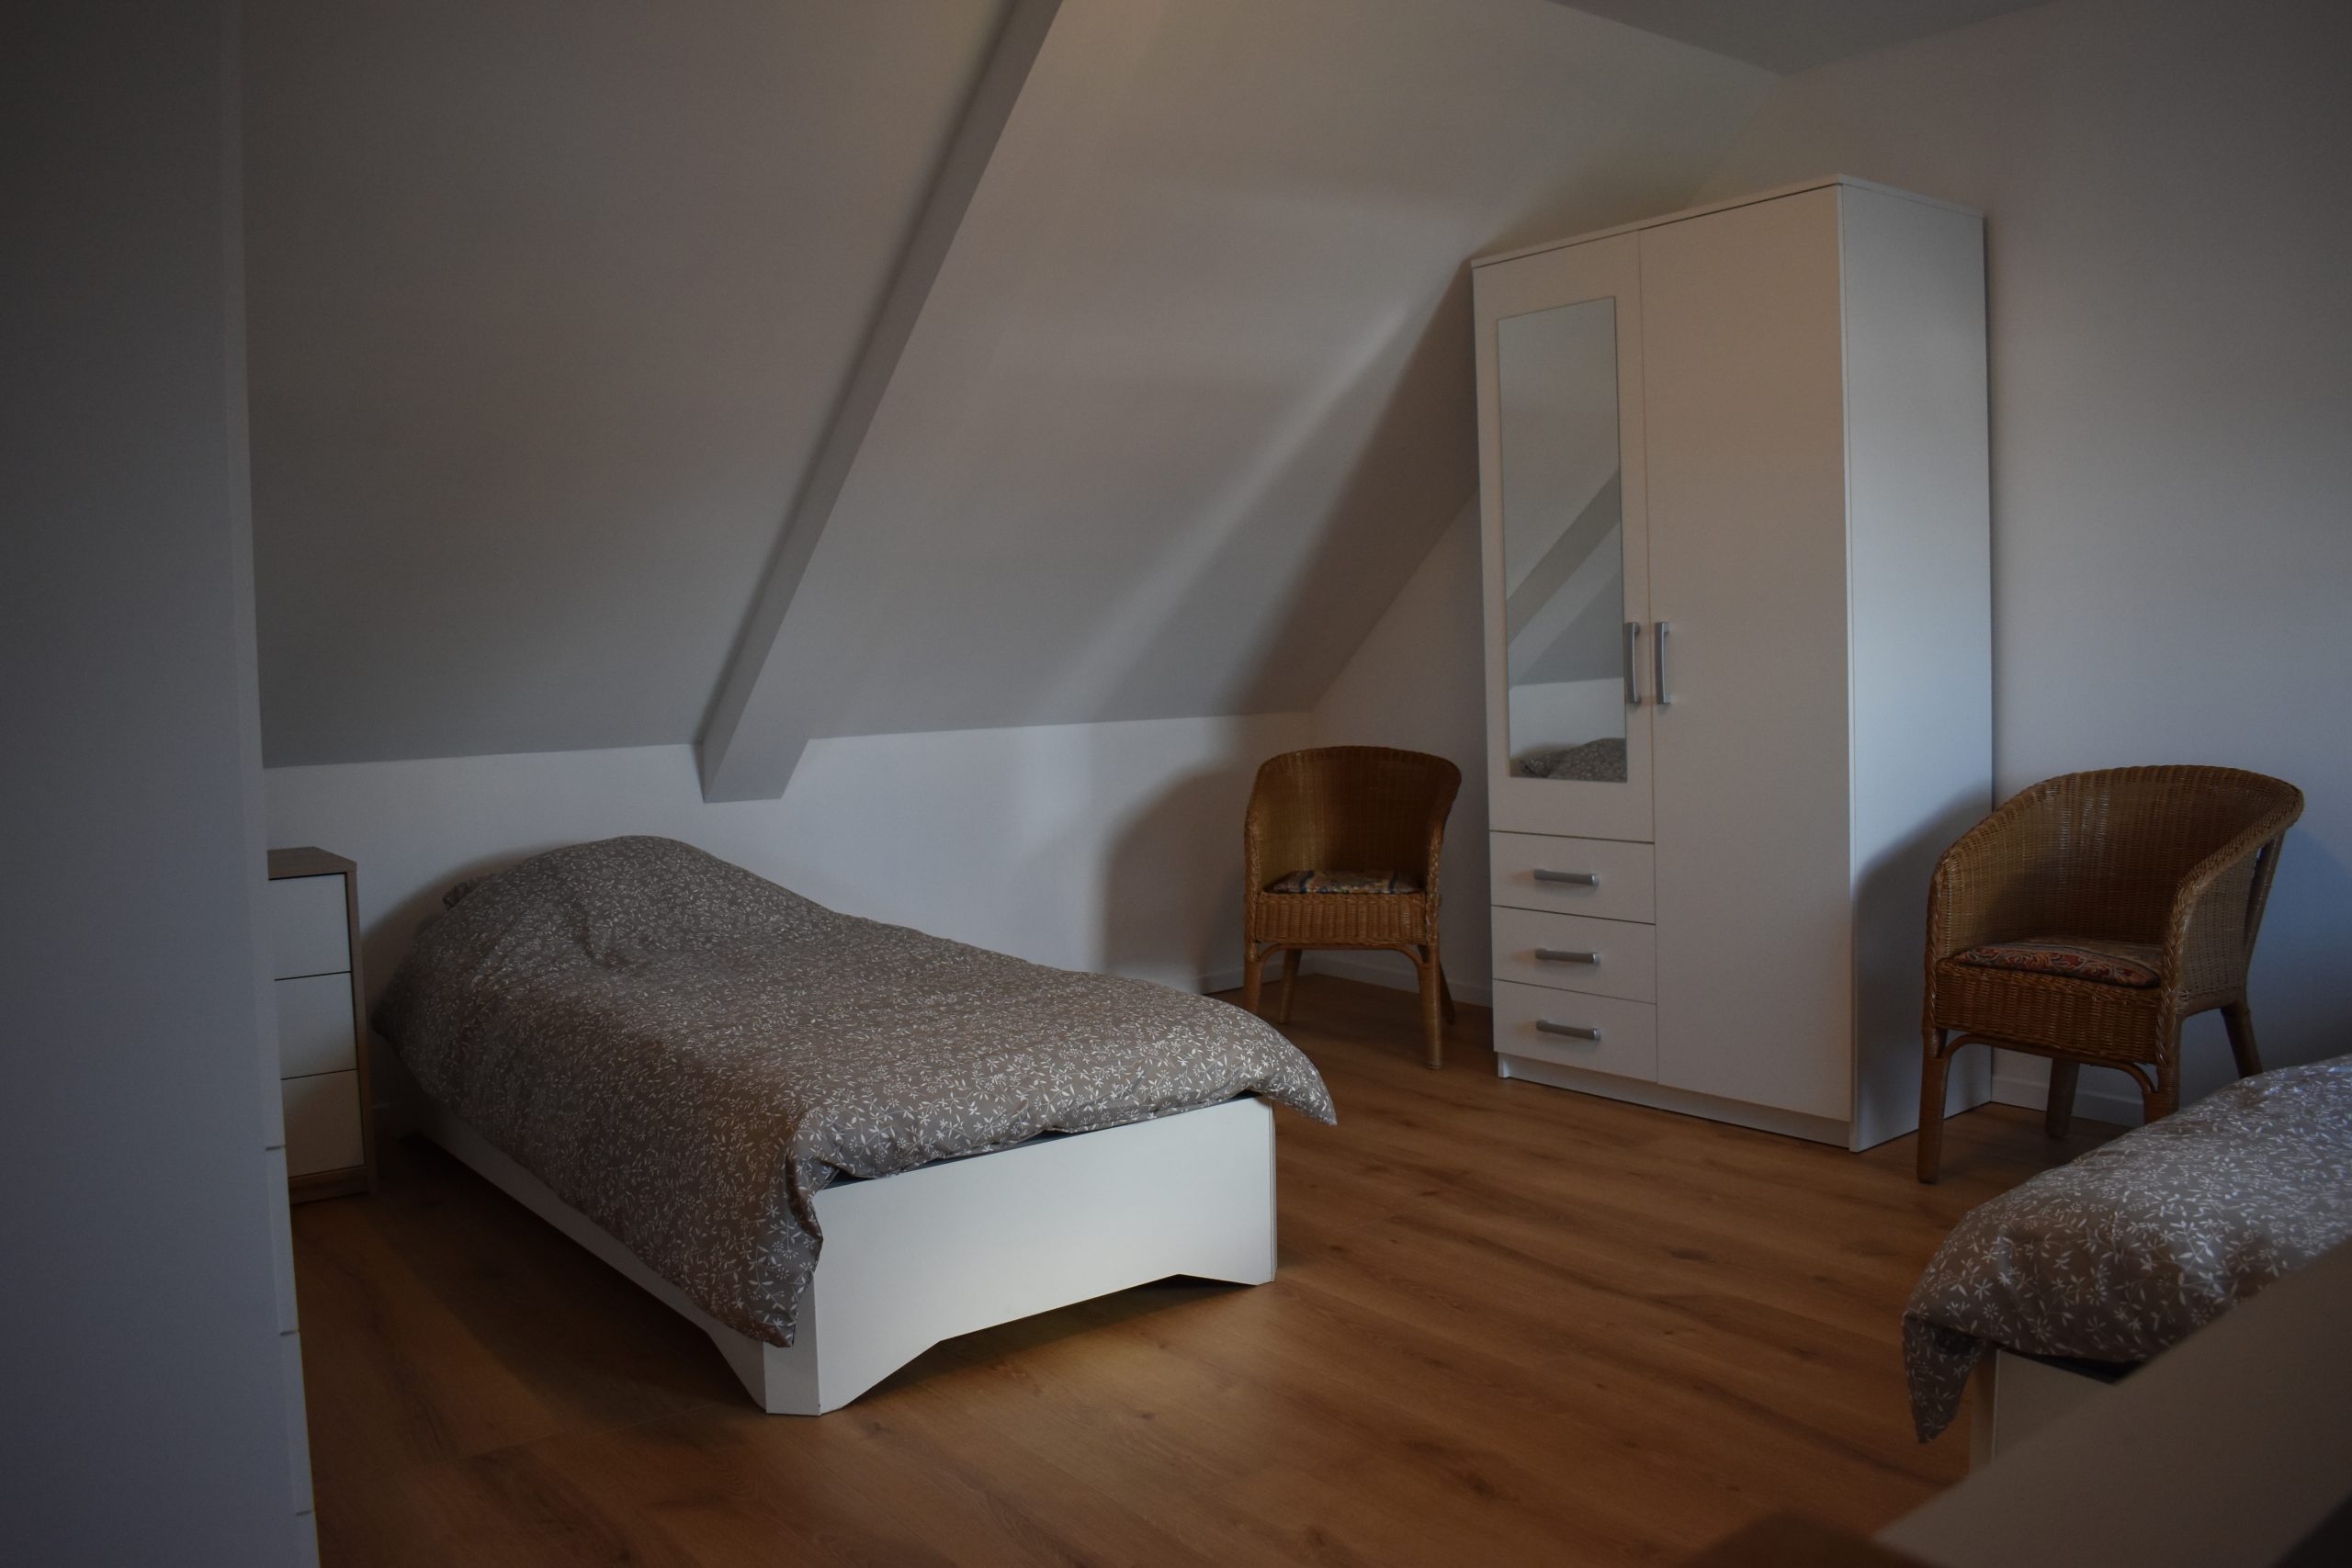 4-bedroom for rent in Antwerp - bedroom